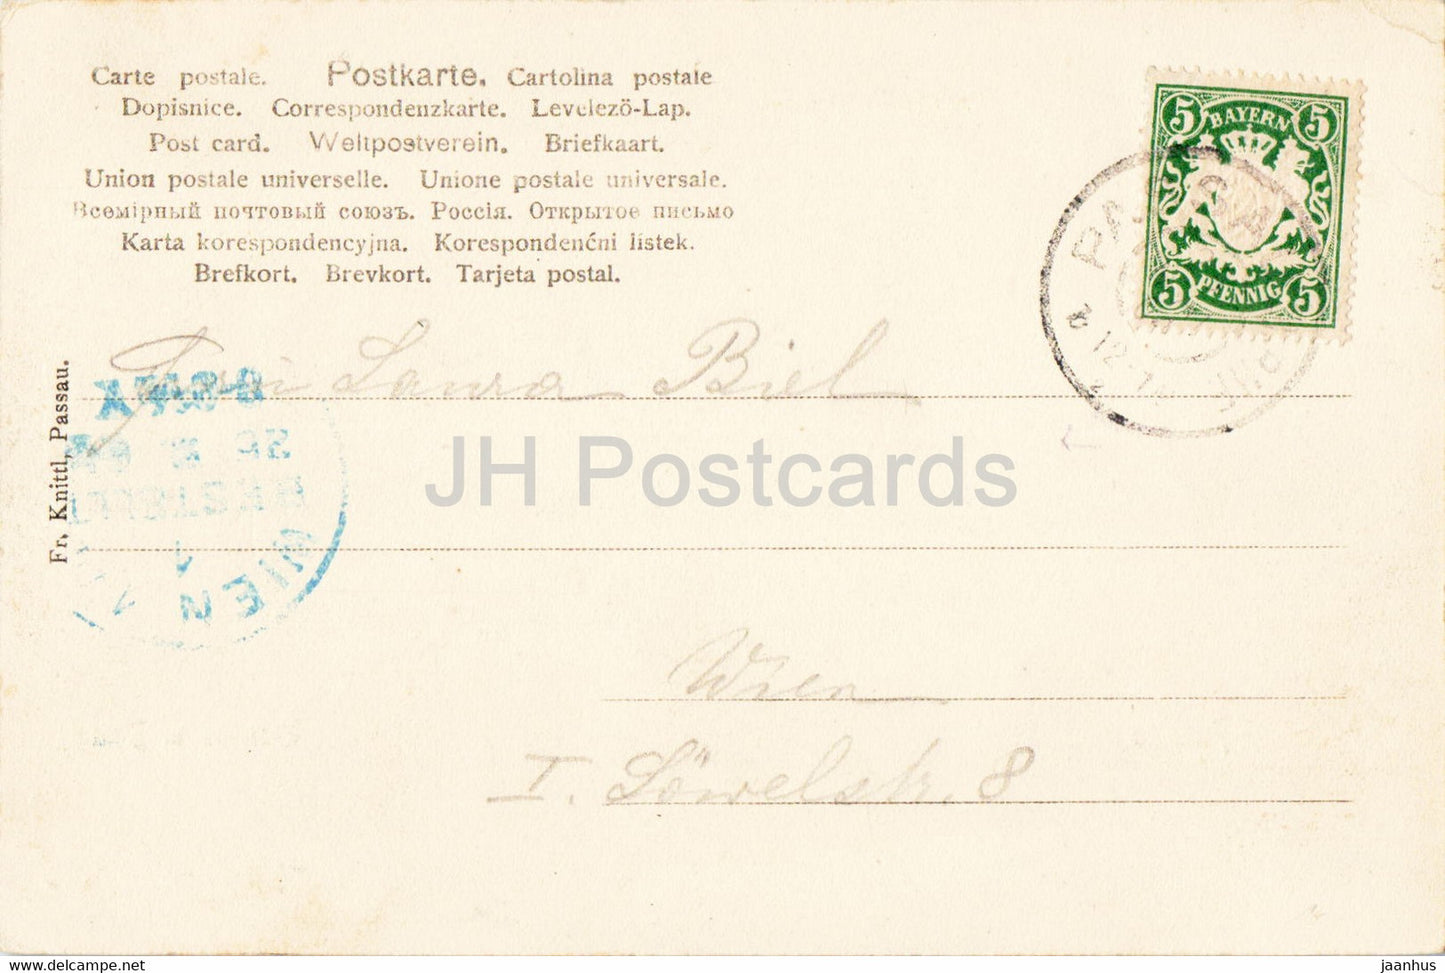 Passau - Rathaus u Dom - hôtel de ville - cathédrale - 7386 - carte postale ancienne - 1904 - Allemagne - utilisé